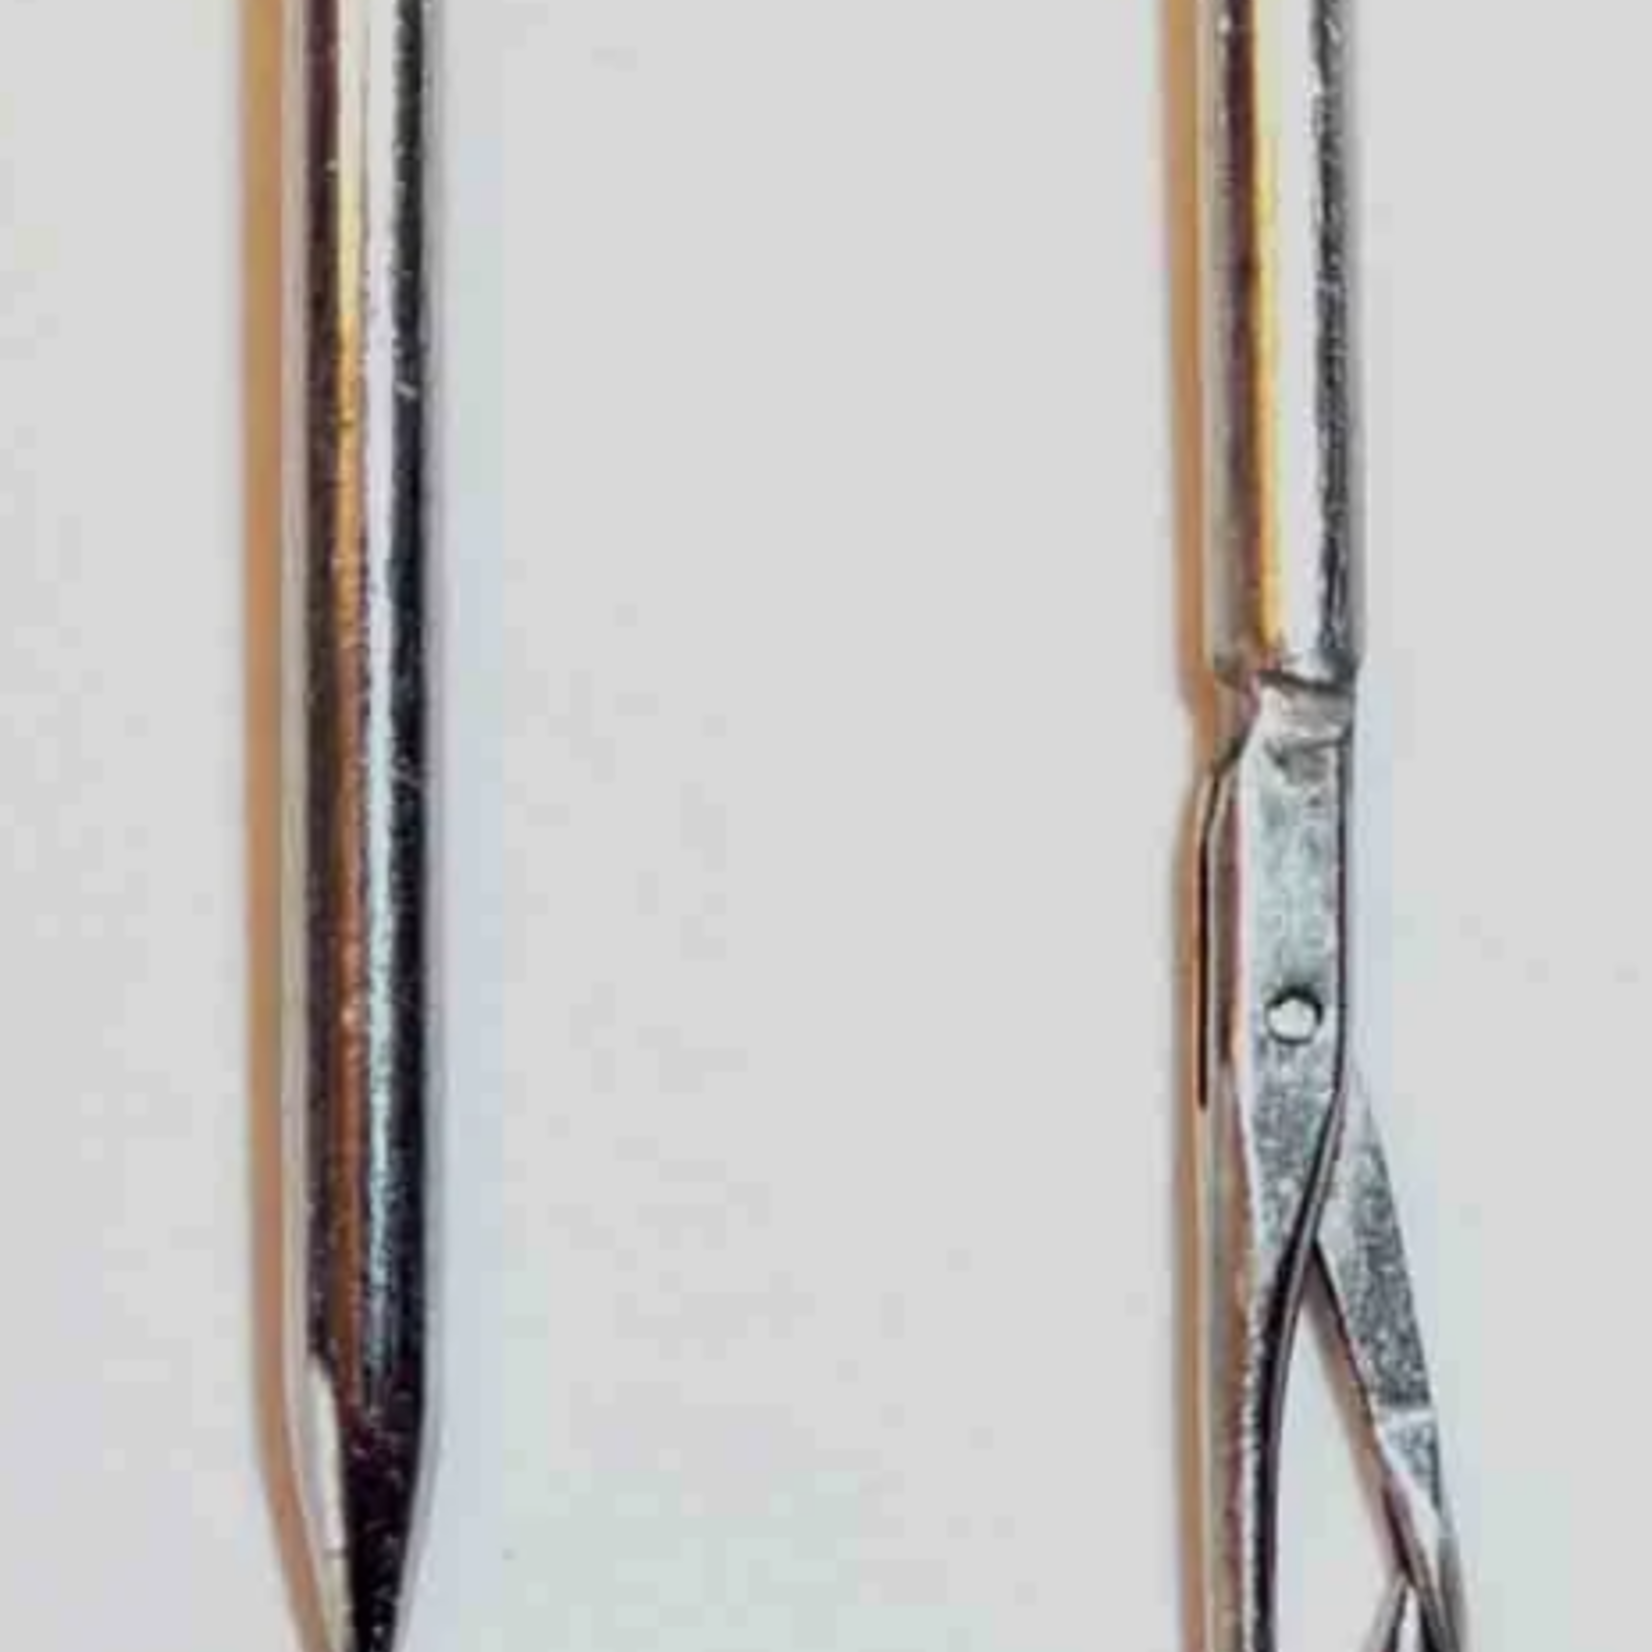 Daho Splicing Needle